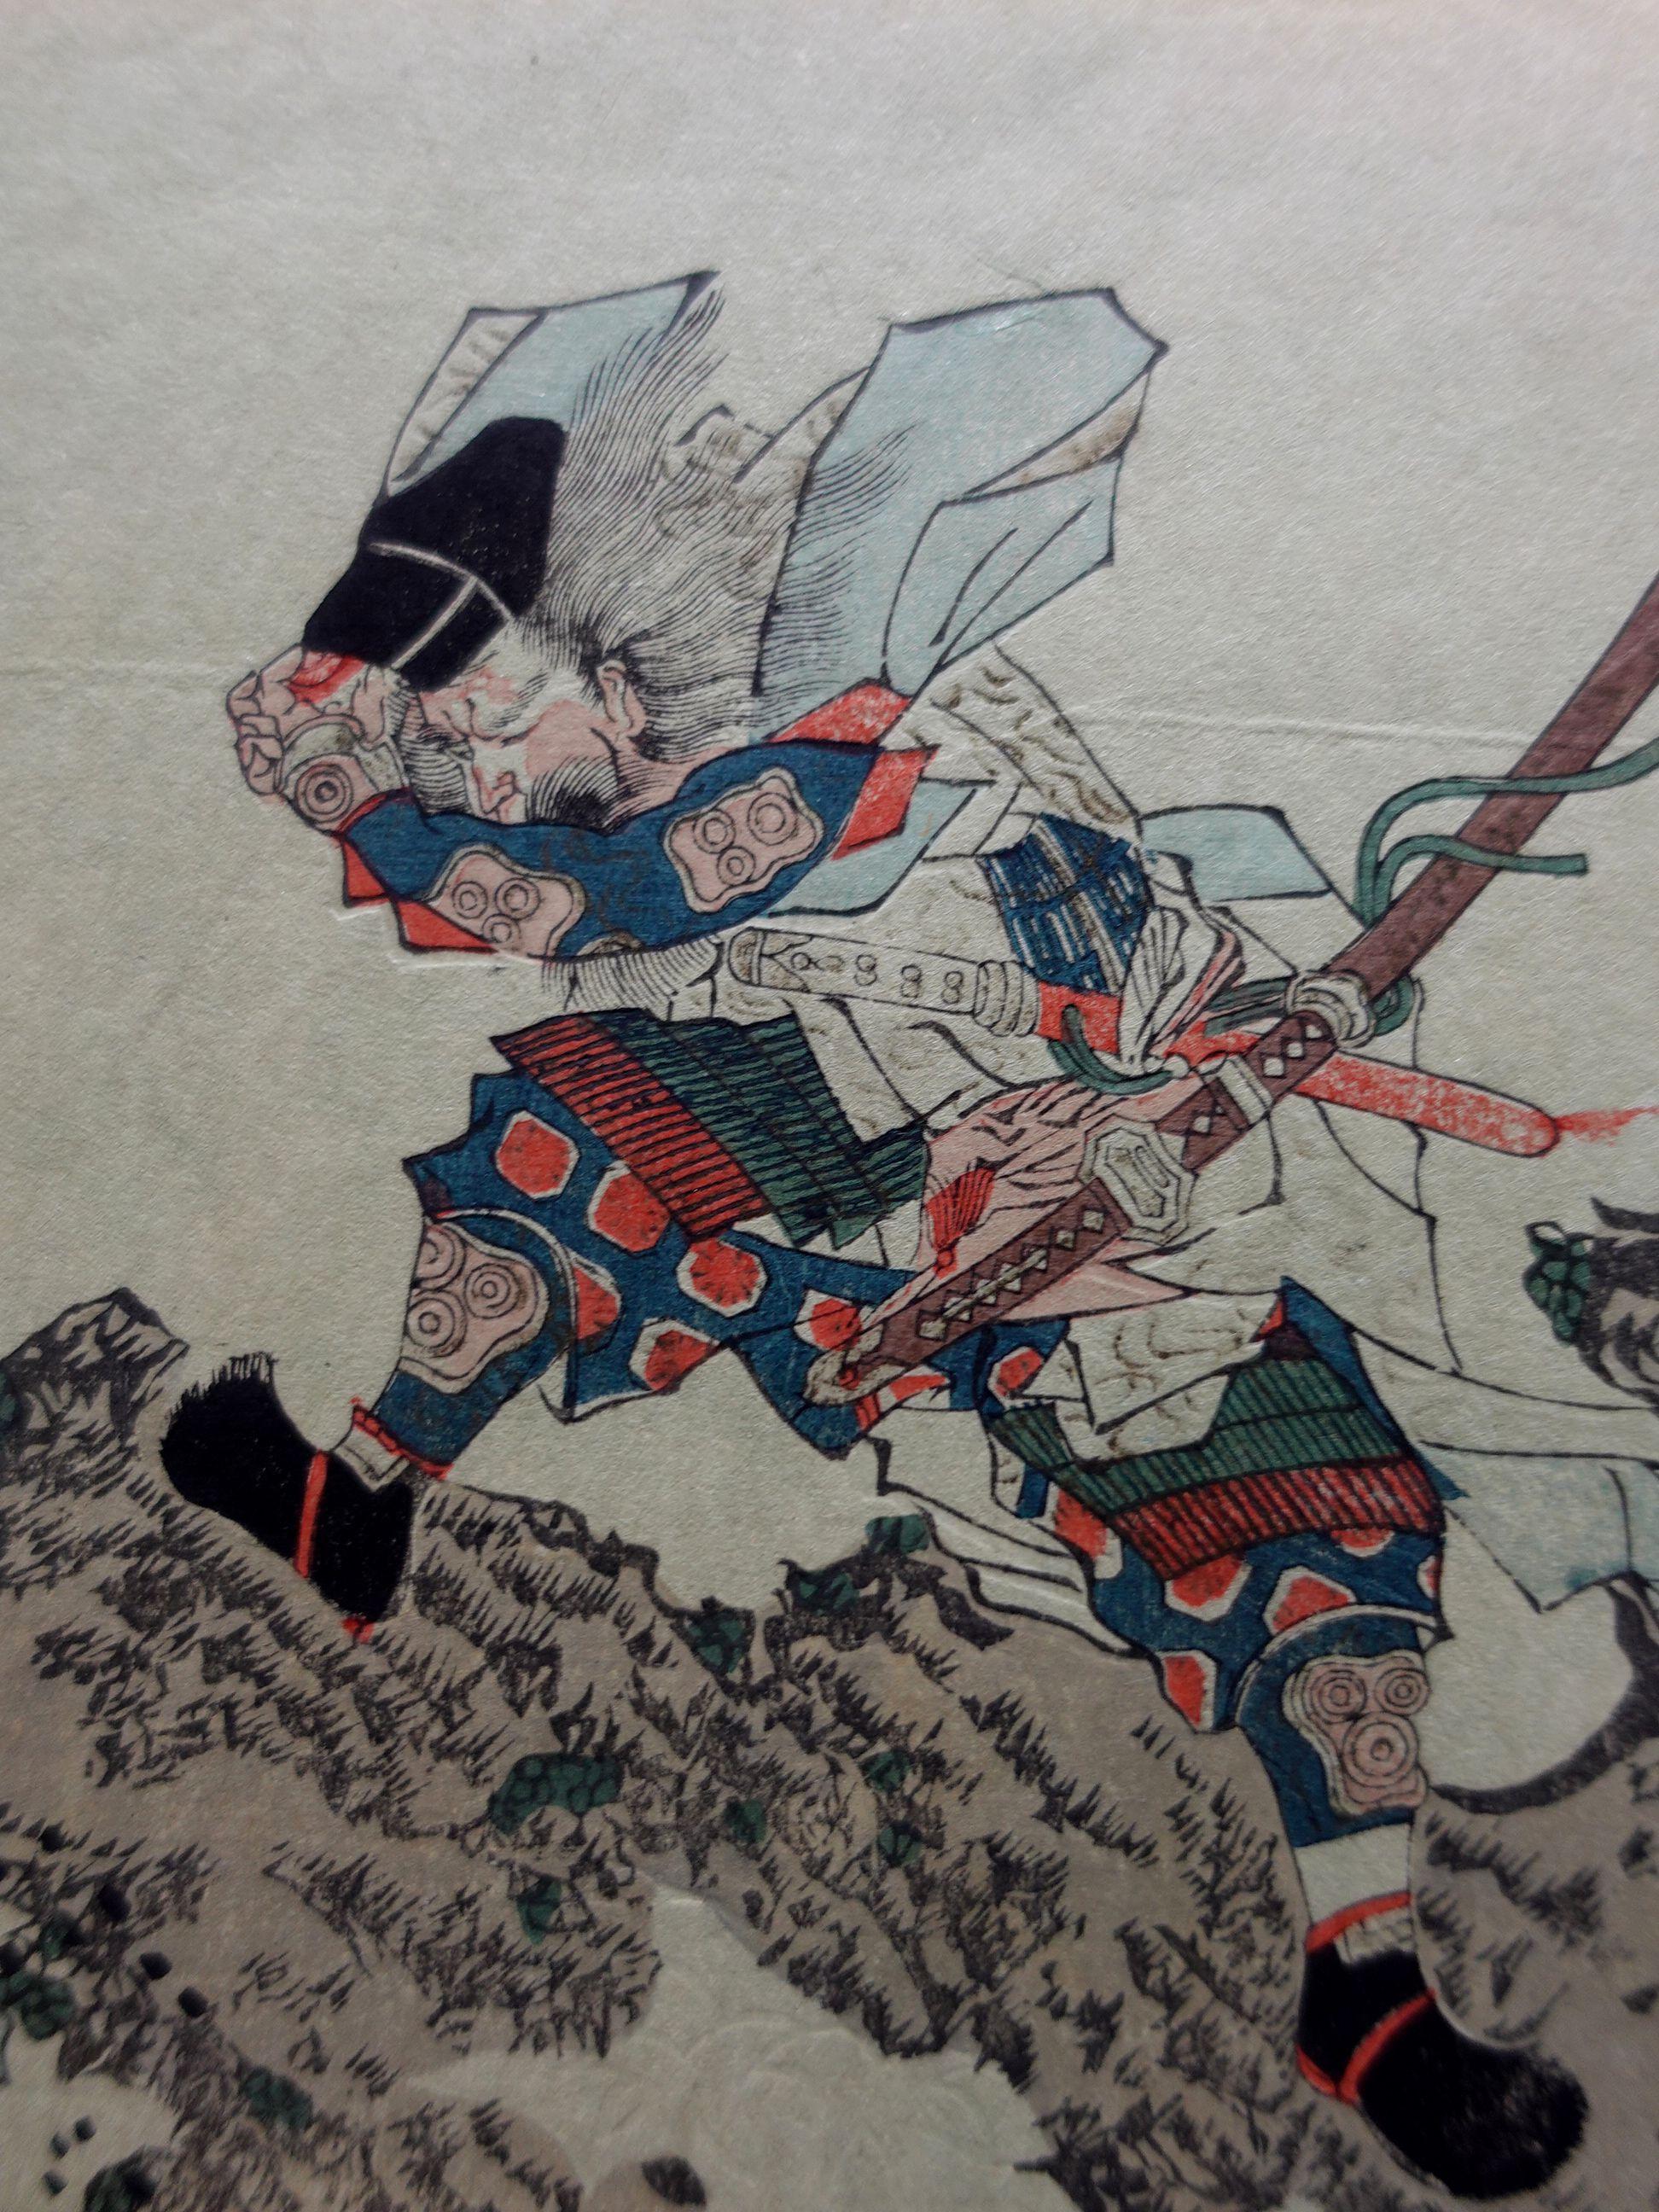 Japanischer Farbholzschnitt (1823) von Yanagawa Shigenobu Version 1880, ungerahmt.

Über den Künstler

Der 1787 in Yanagawa geborene Shigenobu arbeitete als Puppenmacher, bevor er eine erfolgreiche Karriere als Ukiyo-e-Grafiker und Buchillustrator